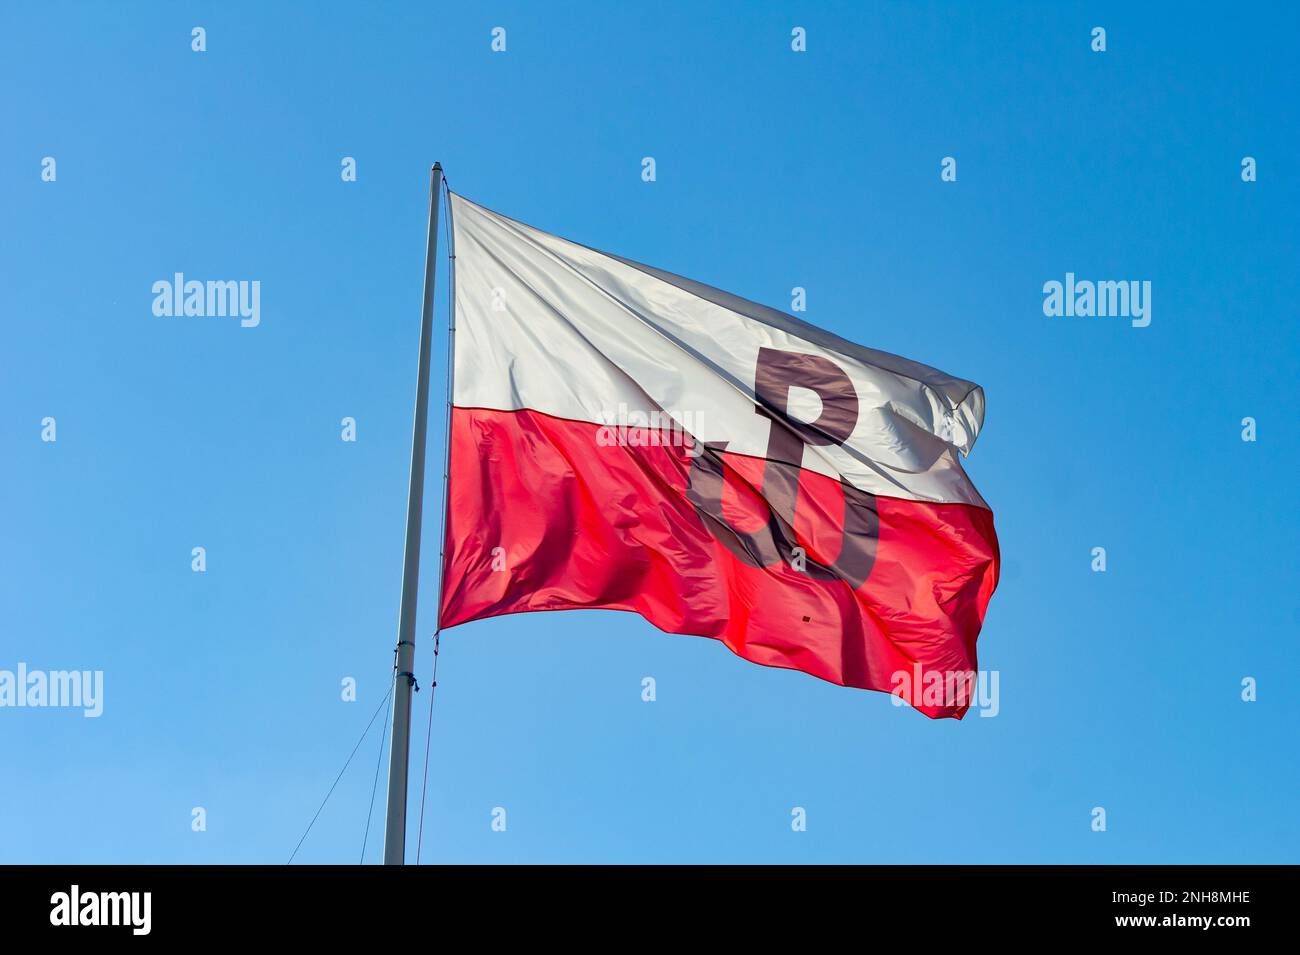 Flagge des polnischen Untergrundstaates (Polskie Panstwo Podziemne und Armia Krajowa), die in Polen im Wind mit blauem Himmel windet Stockfoto